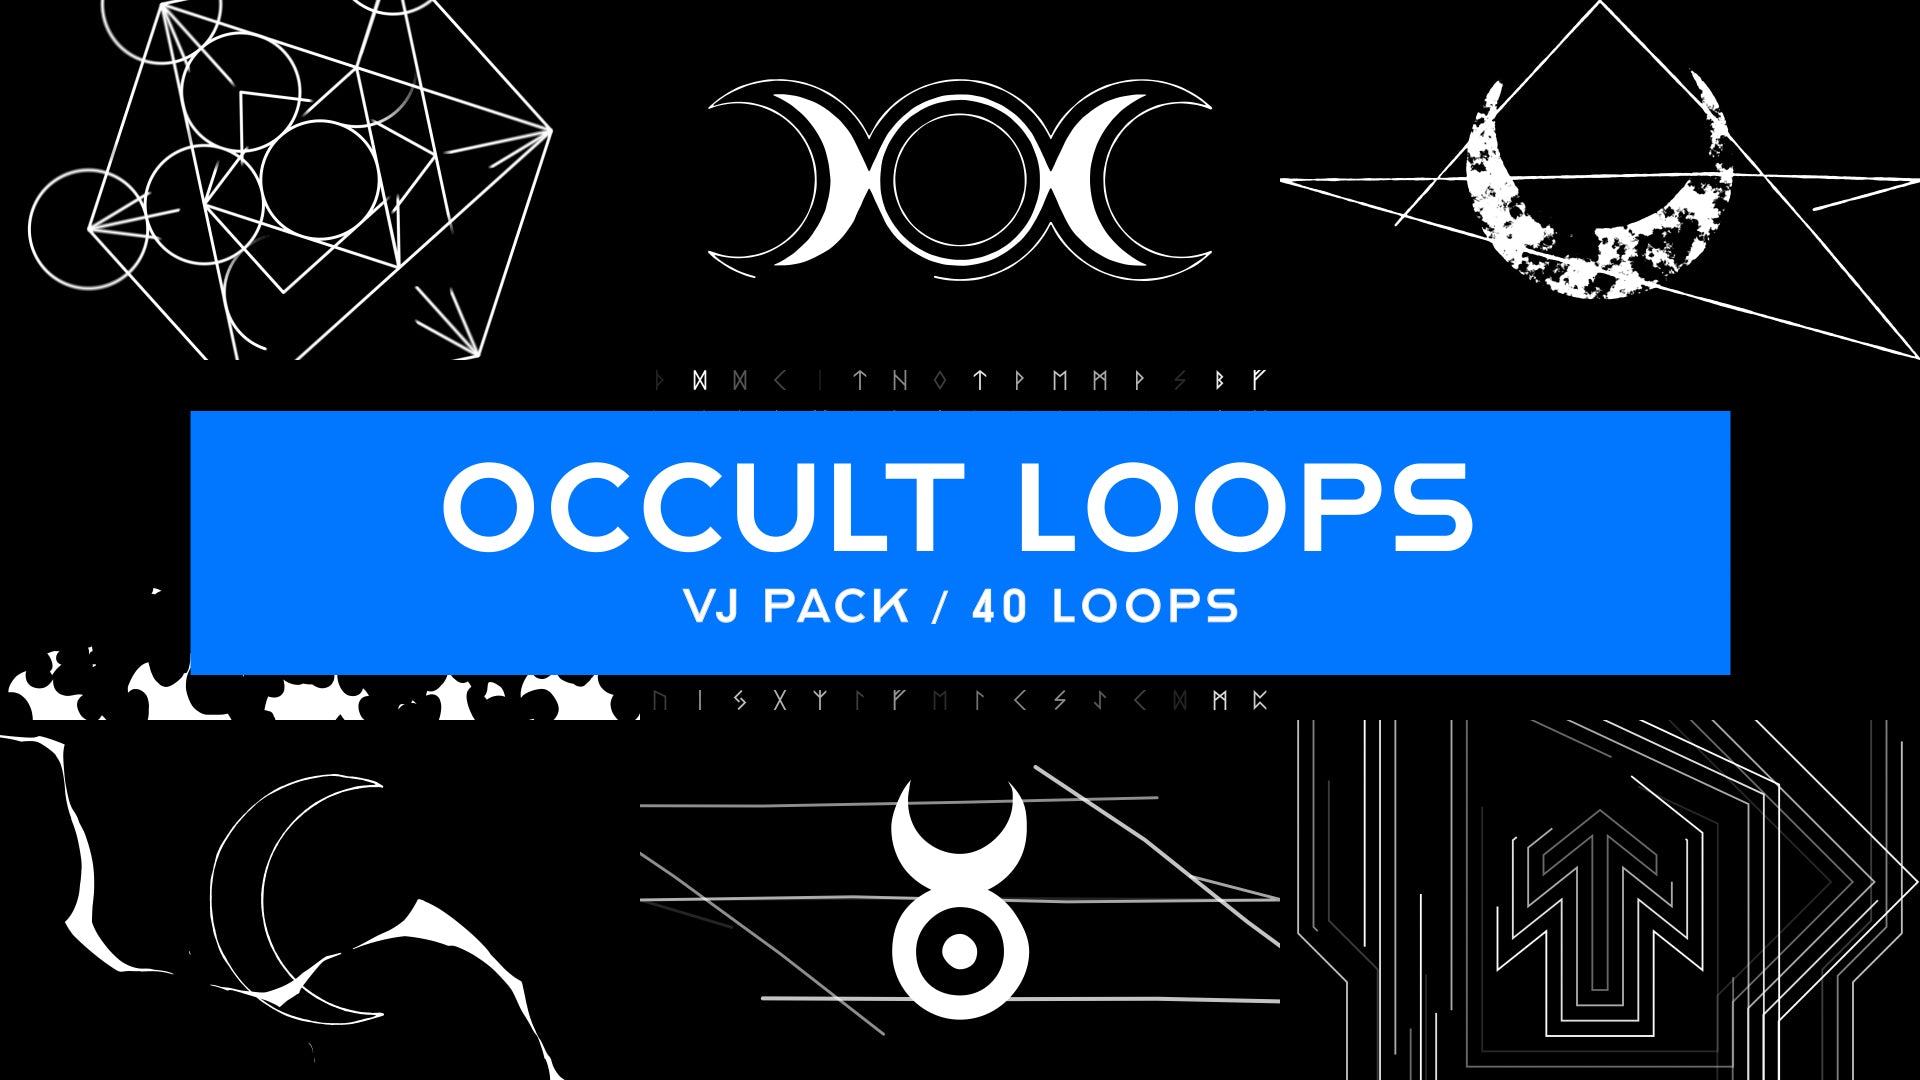 Occult Loops / Halloween VJ Pack